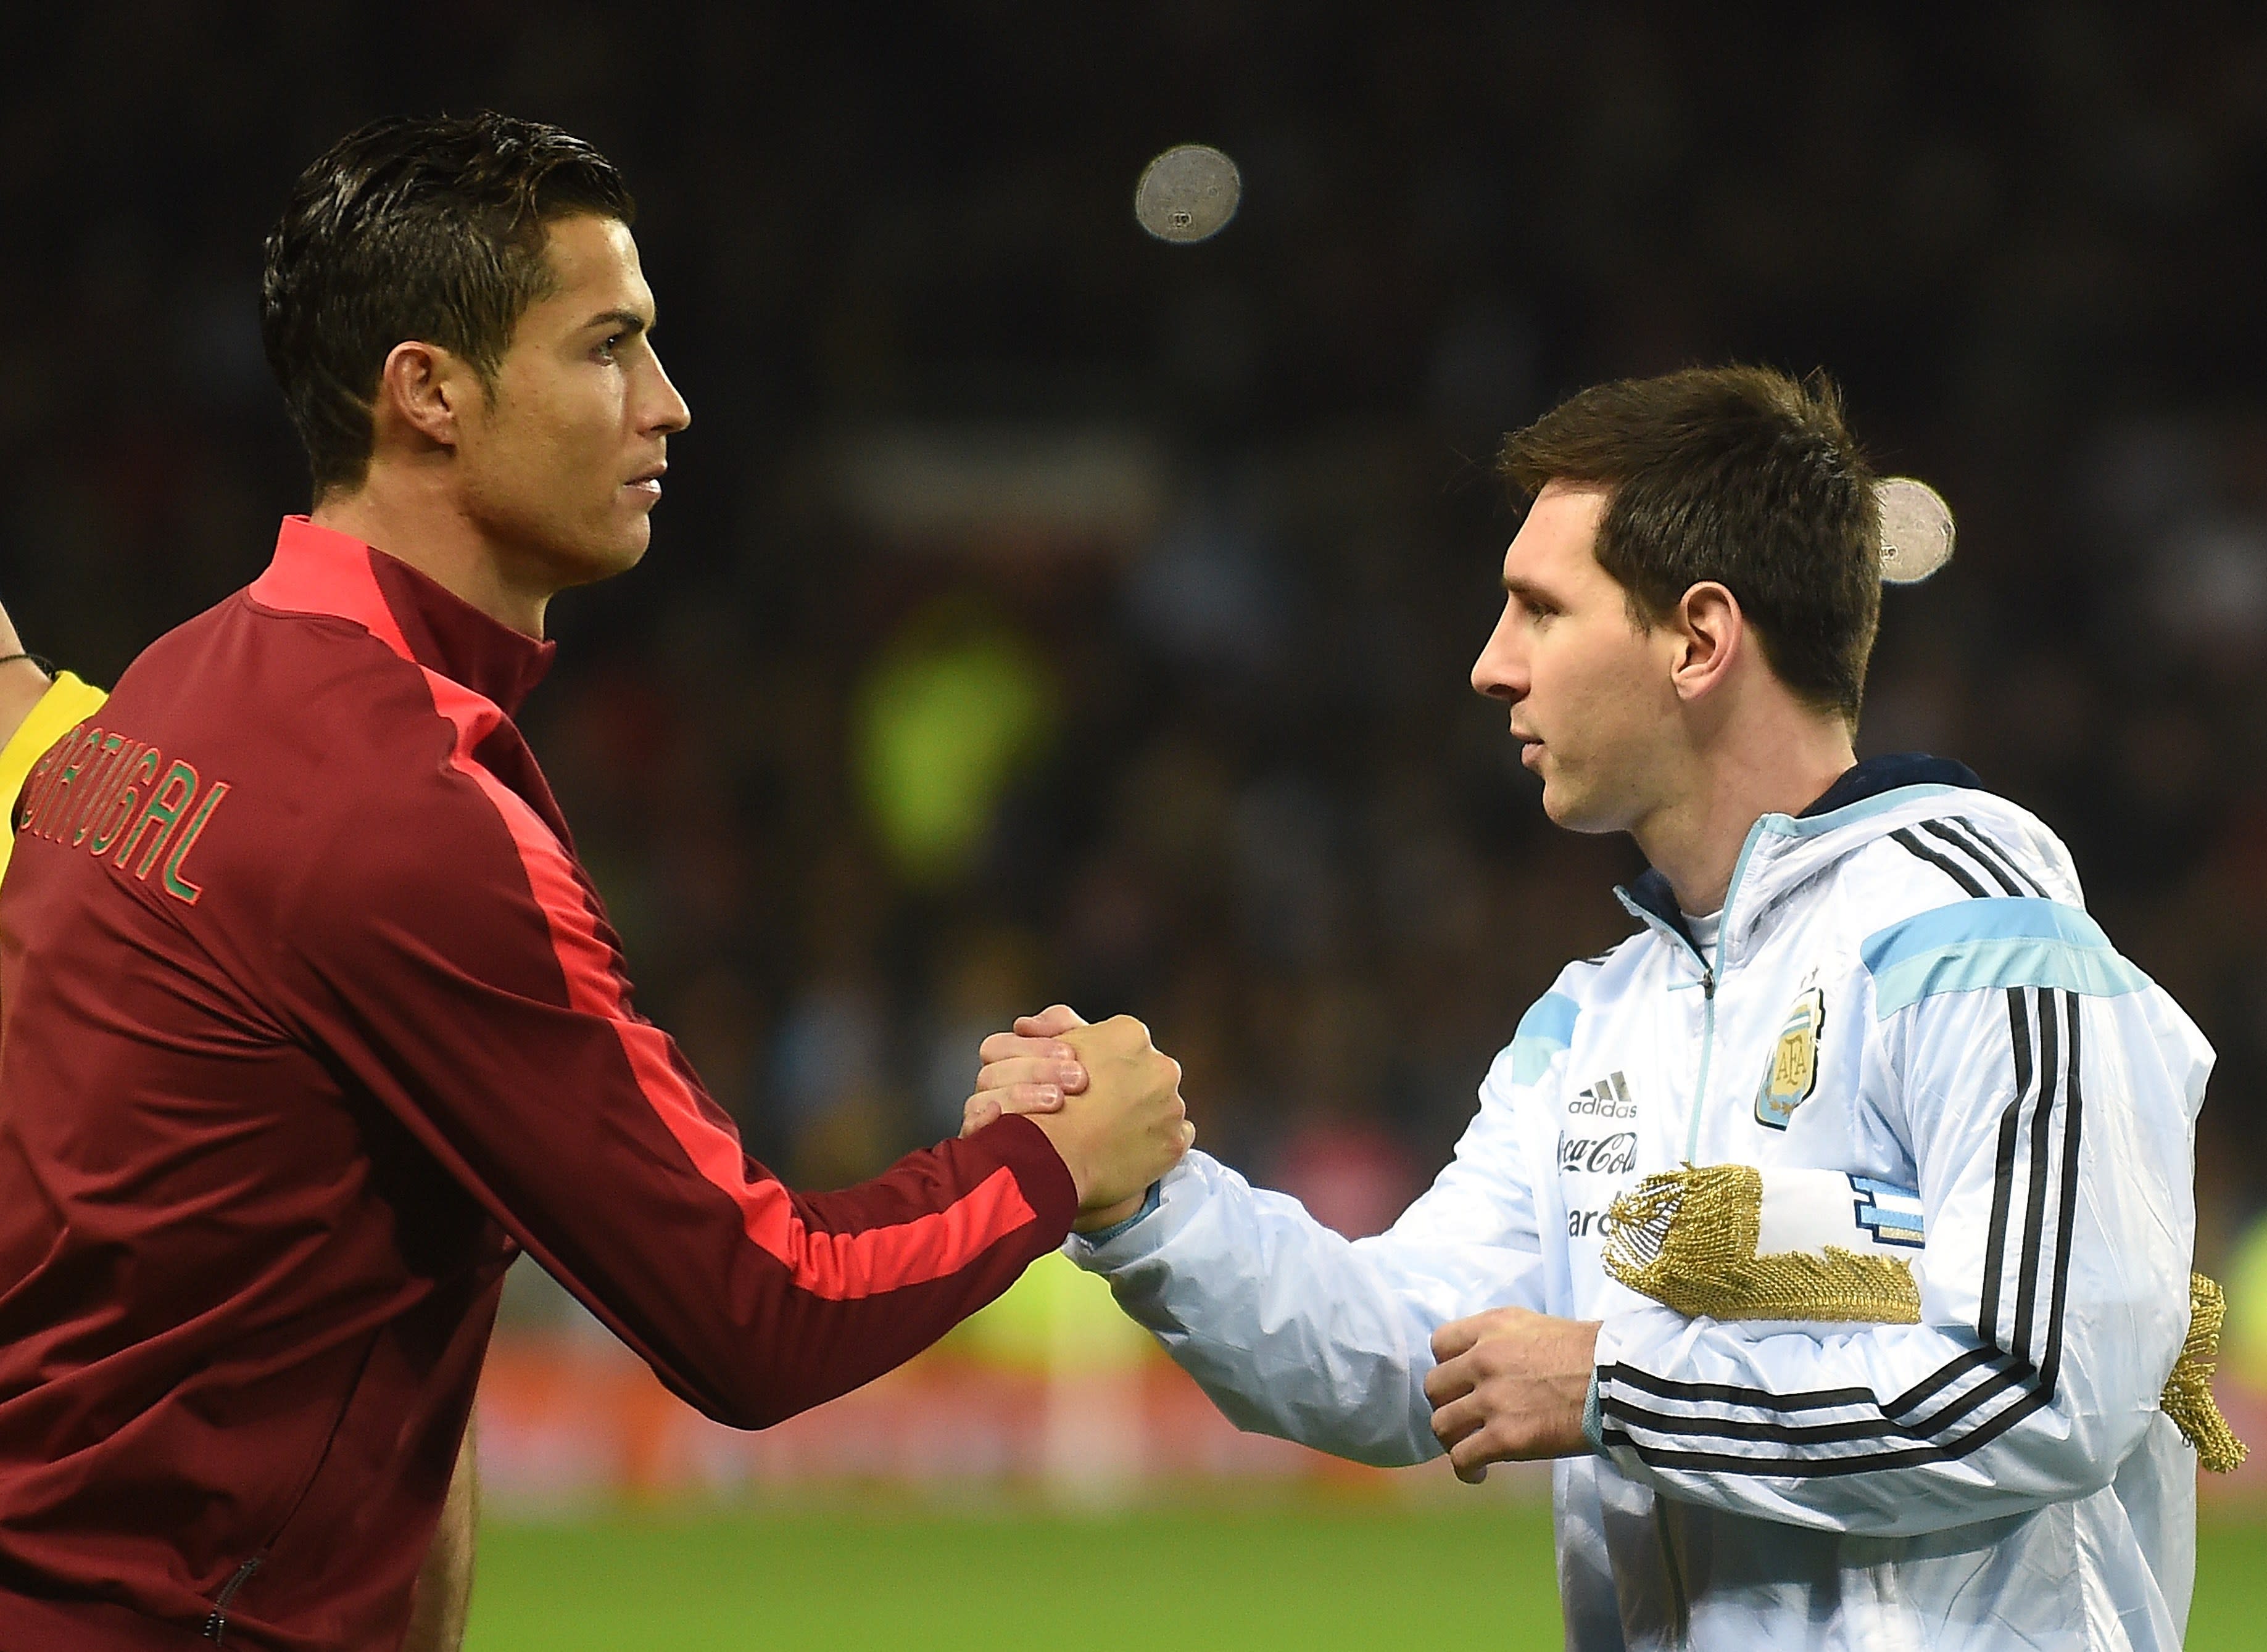 Lionel Messi vs. Cristiano Ronaldo: Who's better?